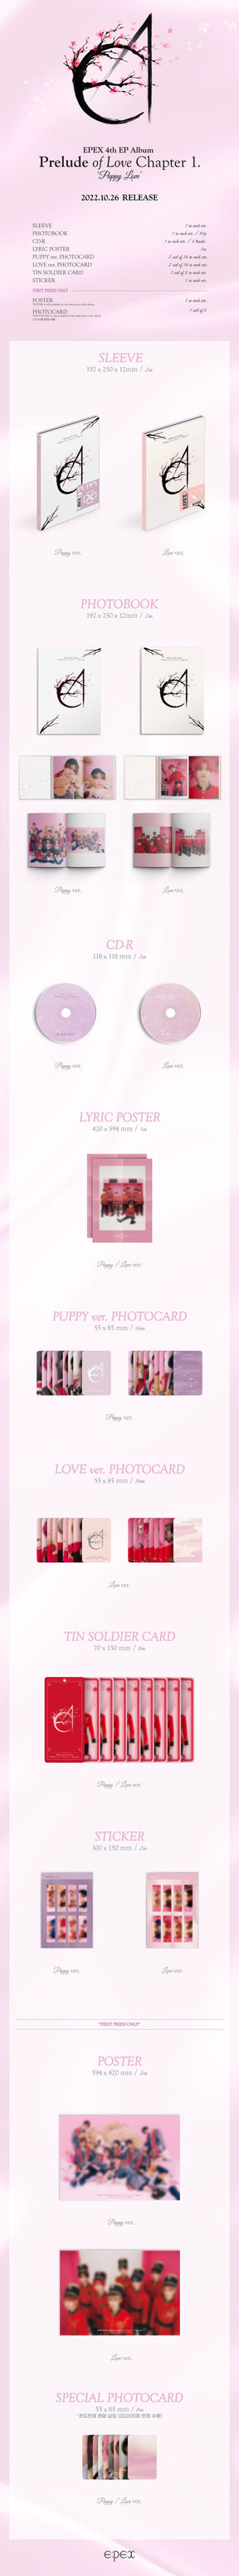 EPEX Mini Album Vol. 4 - Prelude of Love Chapter 1. Puppy Love